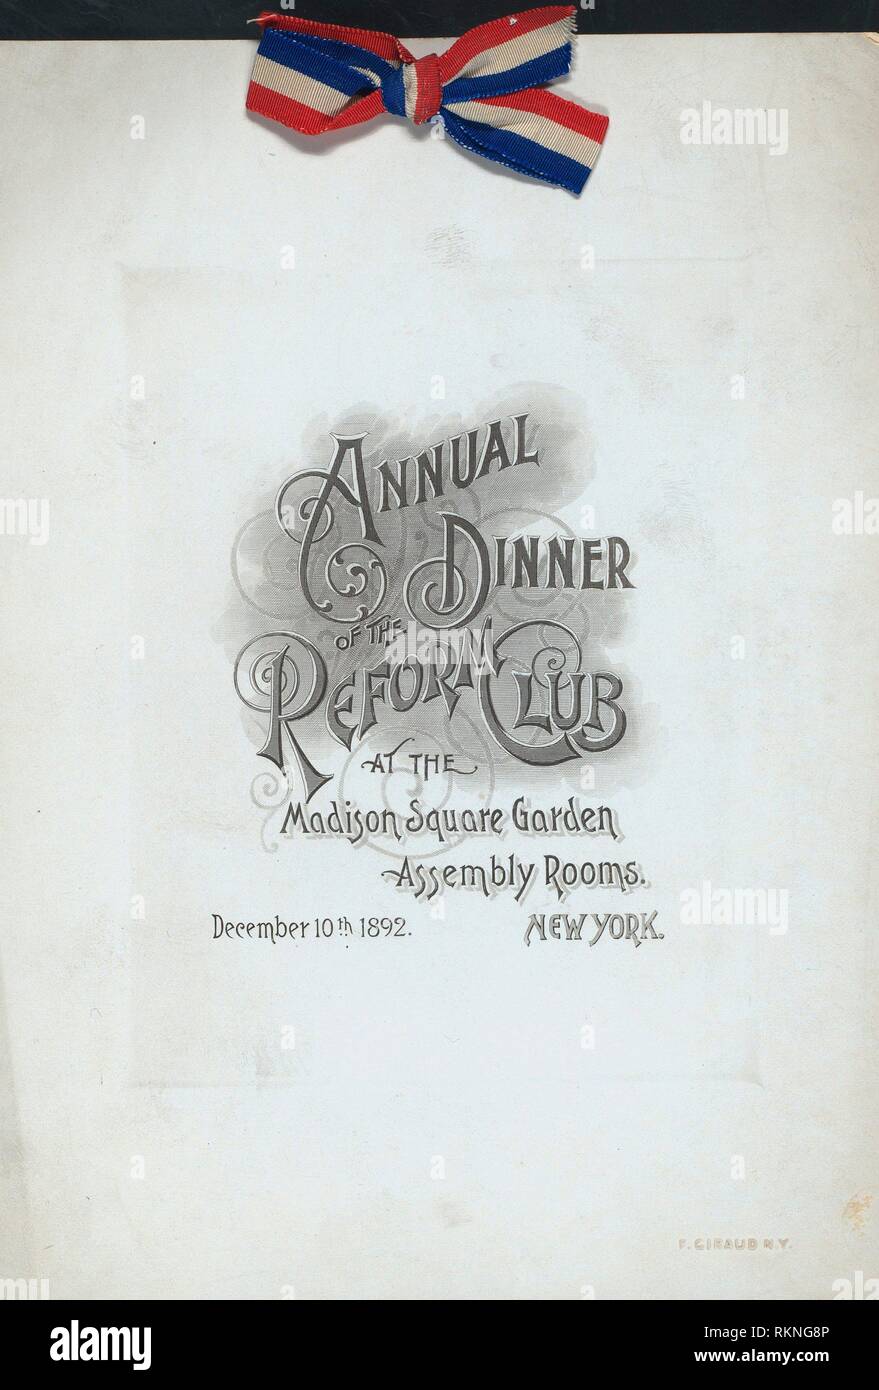 Jahrliche Abendessen Durch Die Reform Club At Madison Square